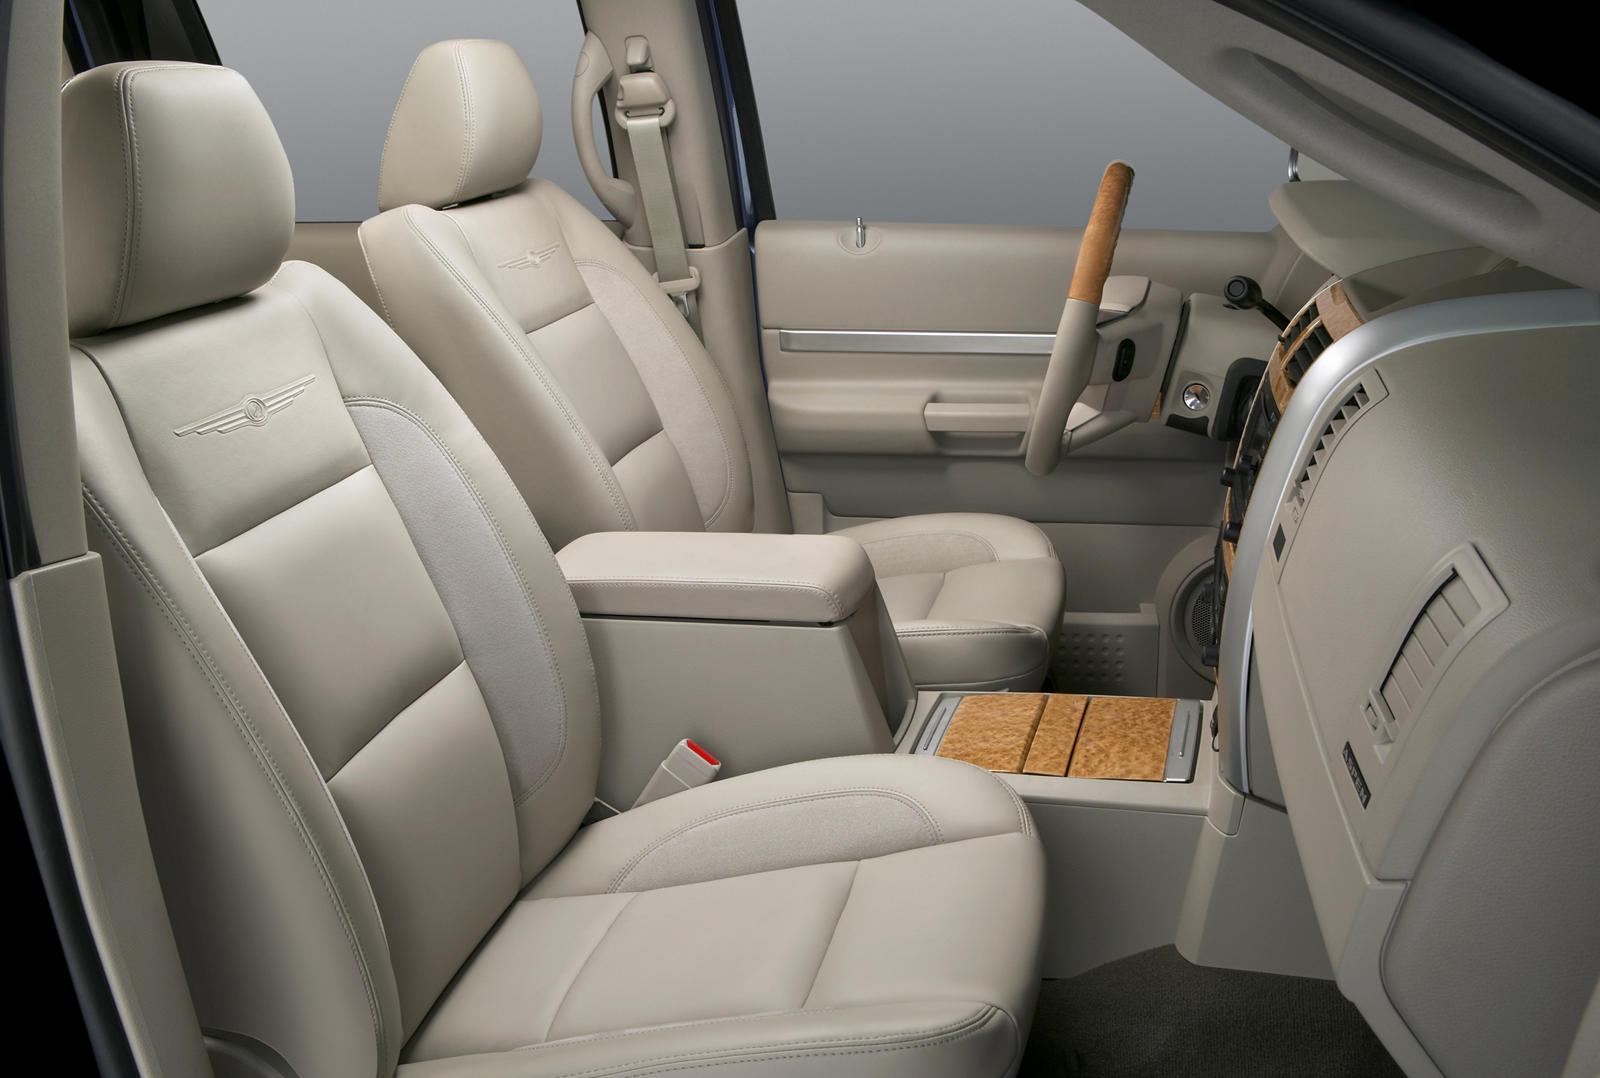 2009 Chrysler Aspen Hybrid Interior Photos | CarBuzz